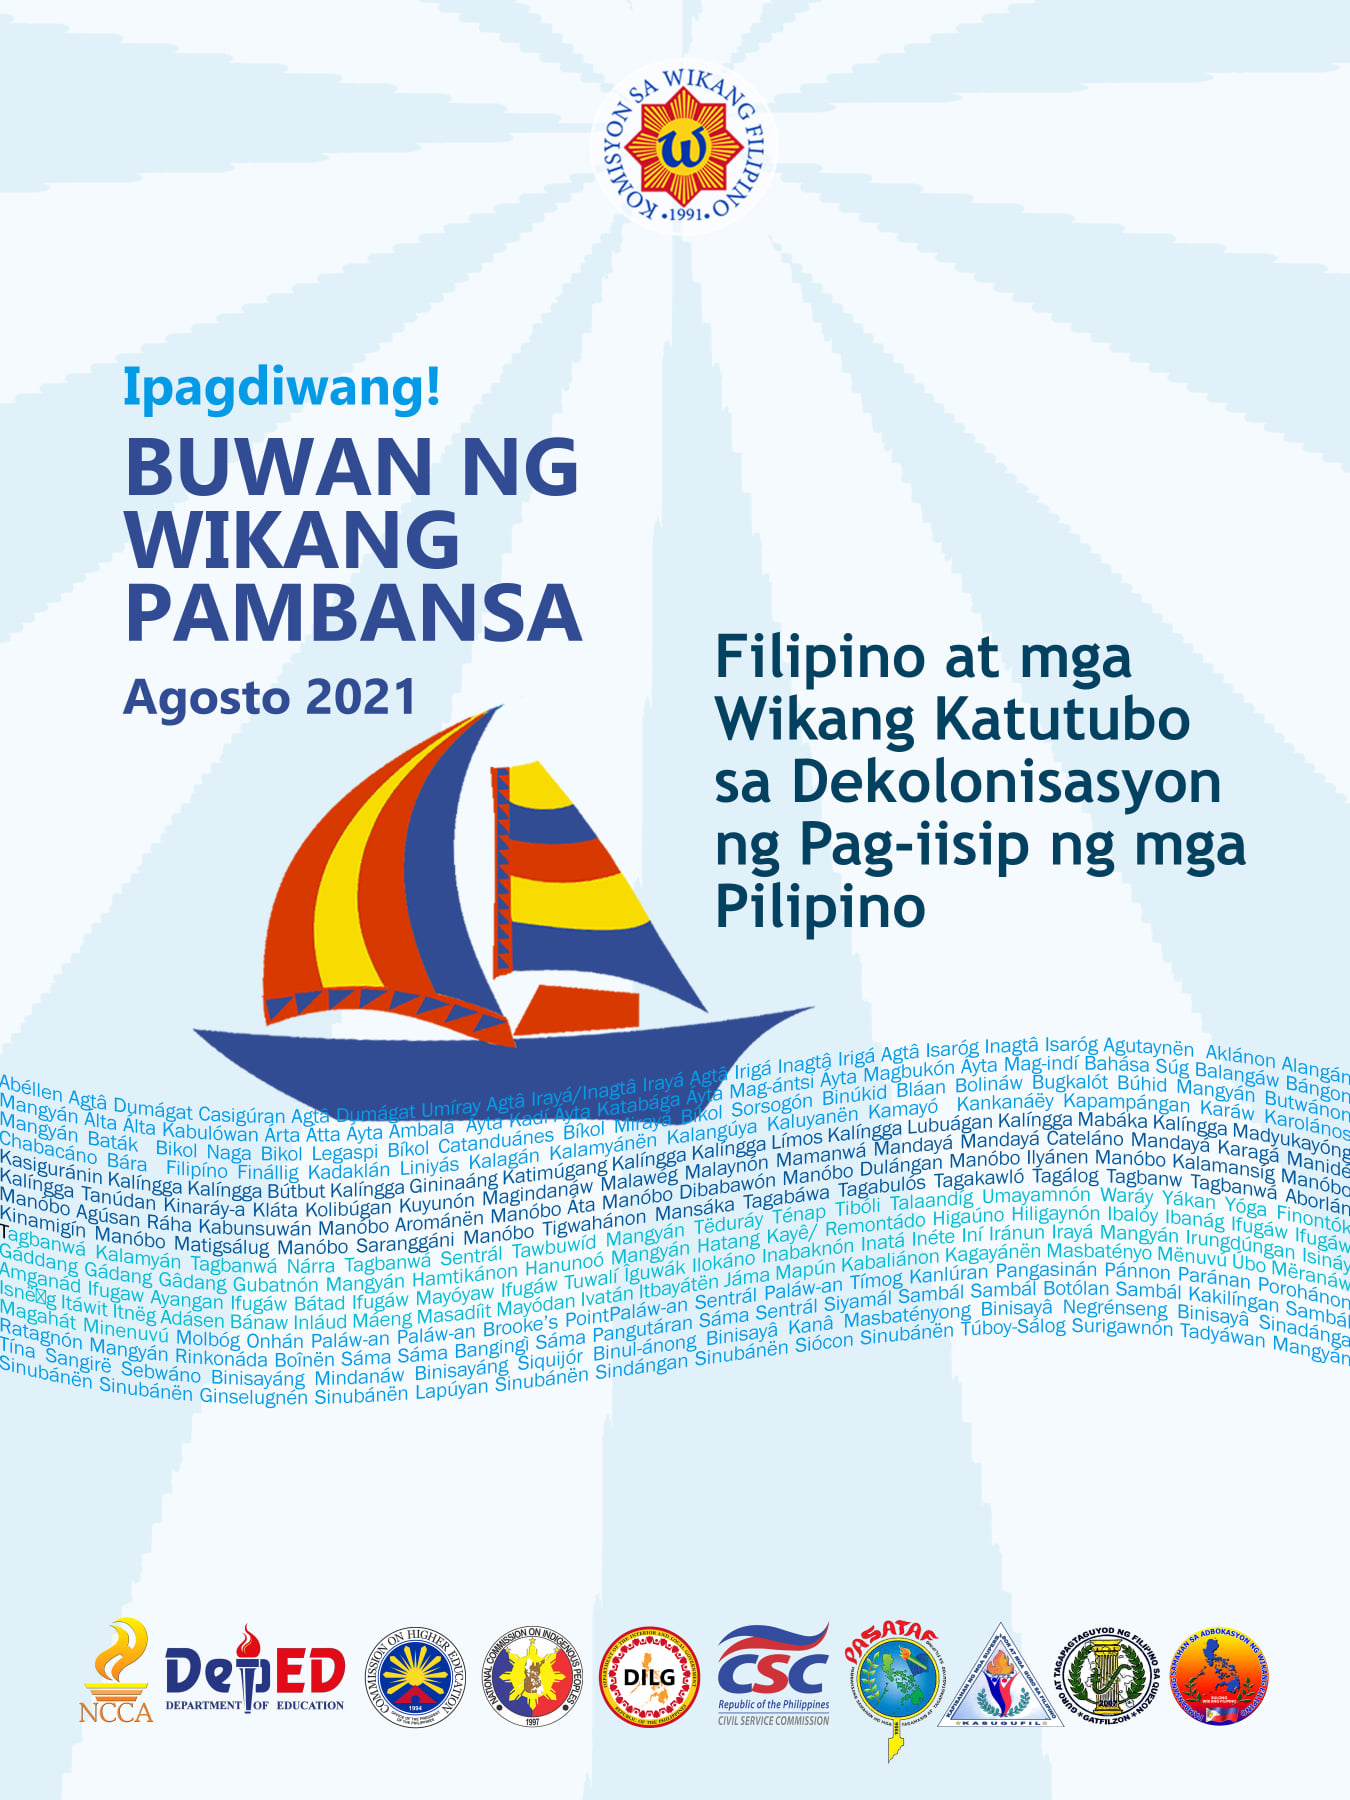 PIA - Tagalog Features: Filipino at mga Katutubong Wika sa nakalipas na